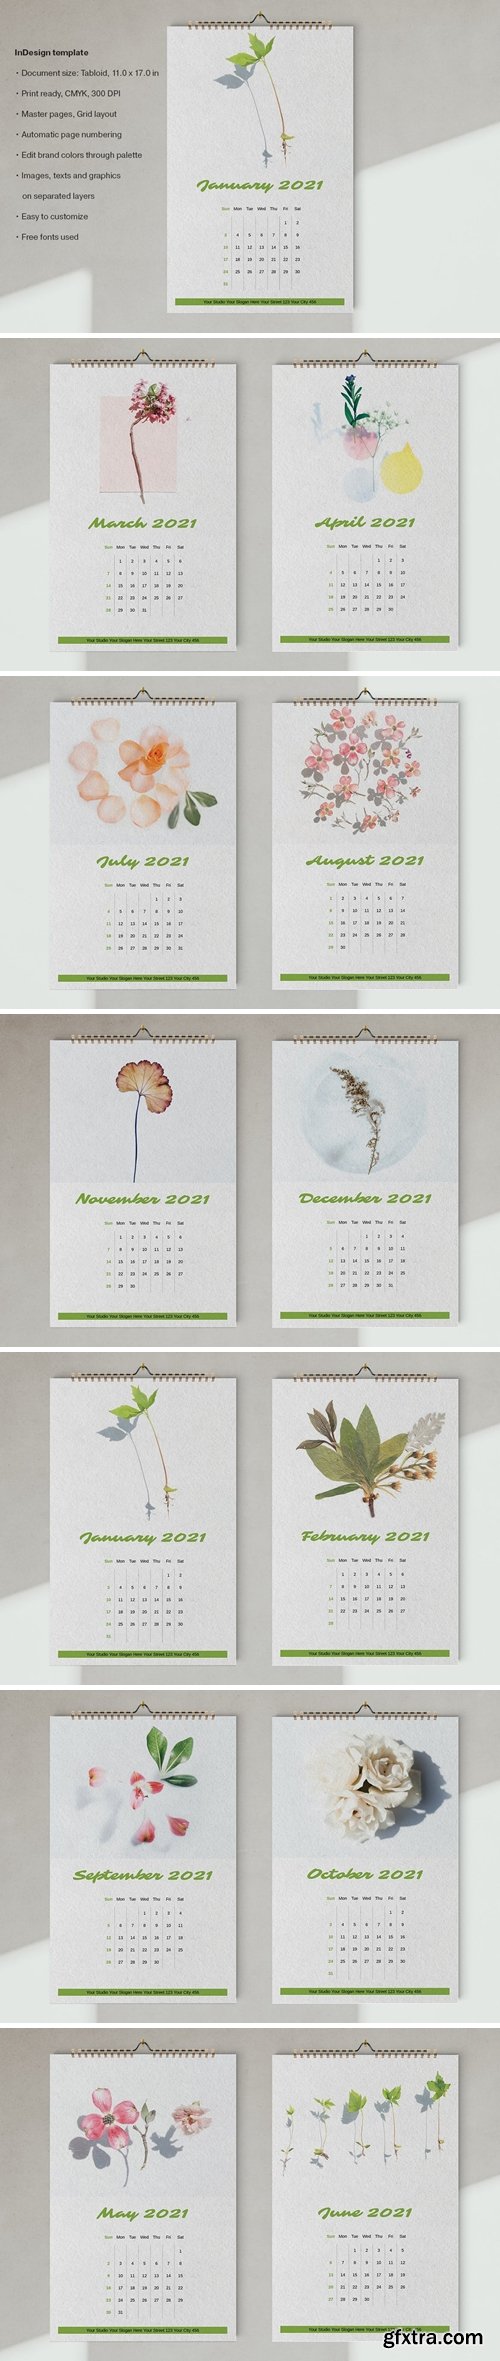 Wall Calendar 2021 Template